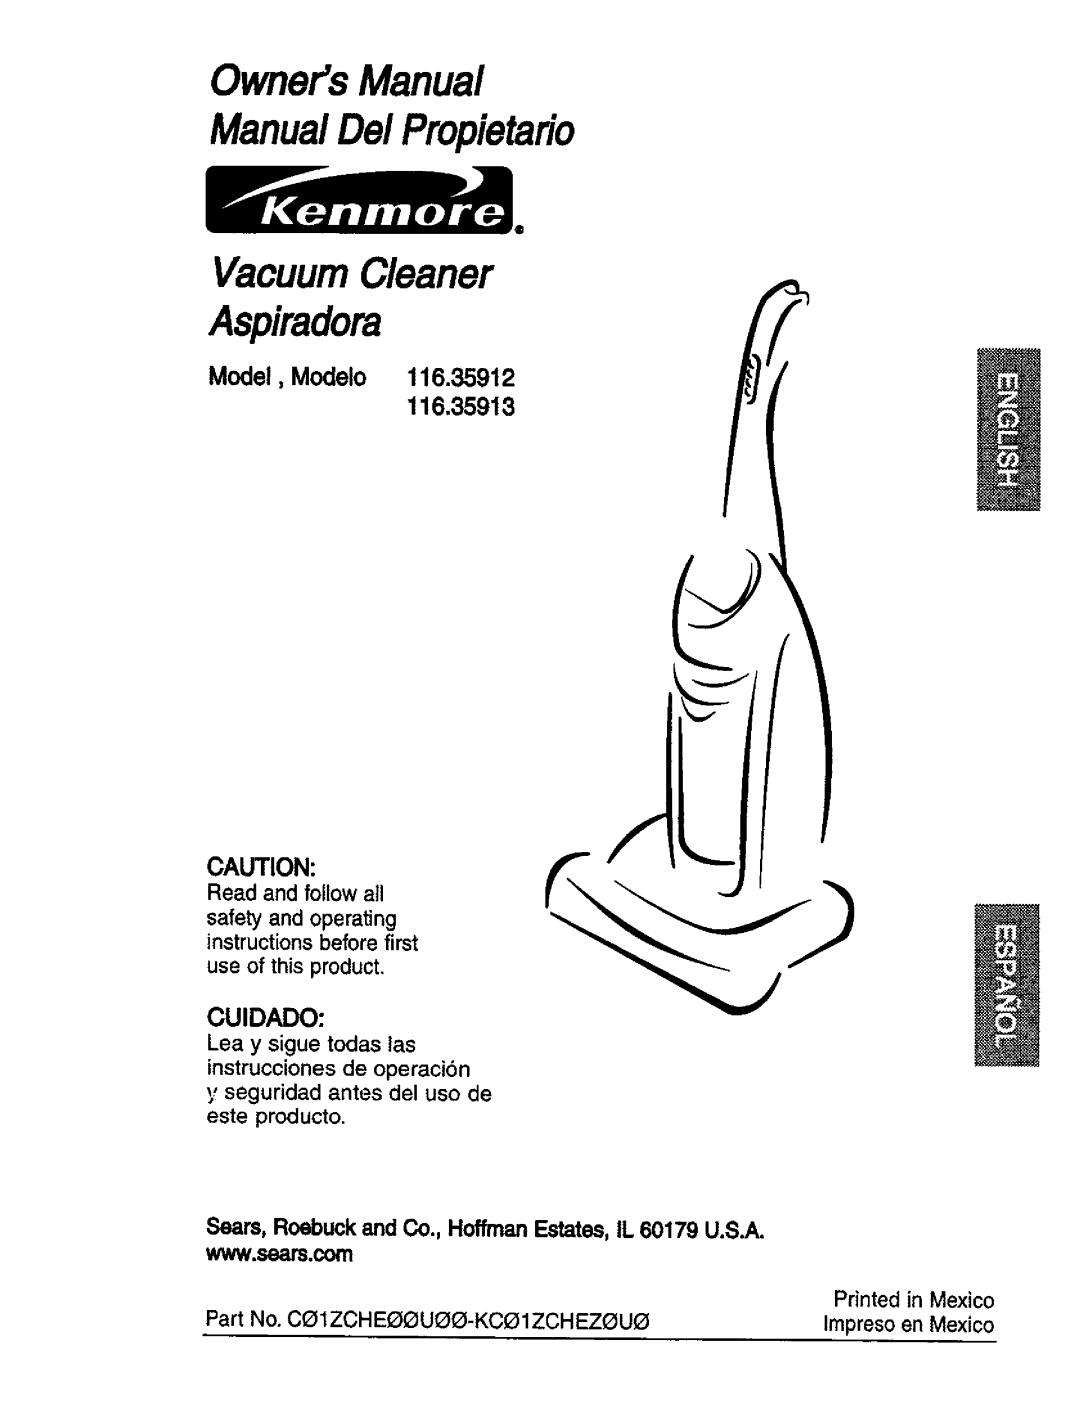 Kenmore owner manual Model, Modelo 116.35912, Cuidado, Lea y sigue todas las instrucciones de operaci6n, Aspiradora 